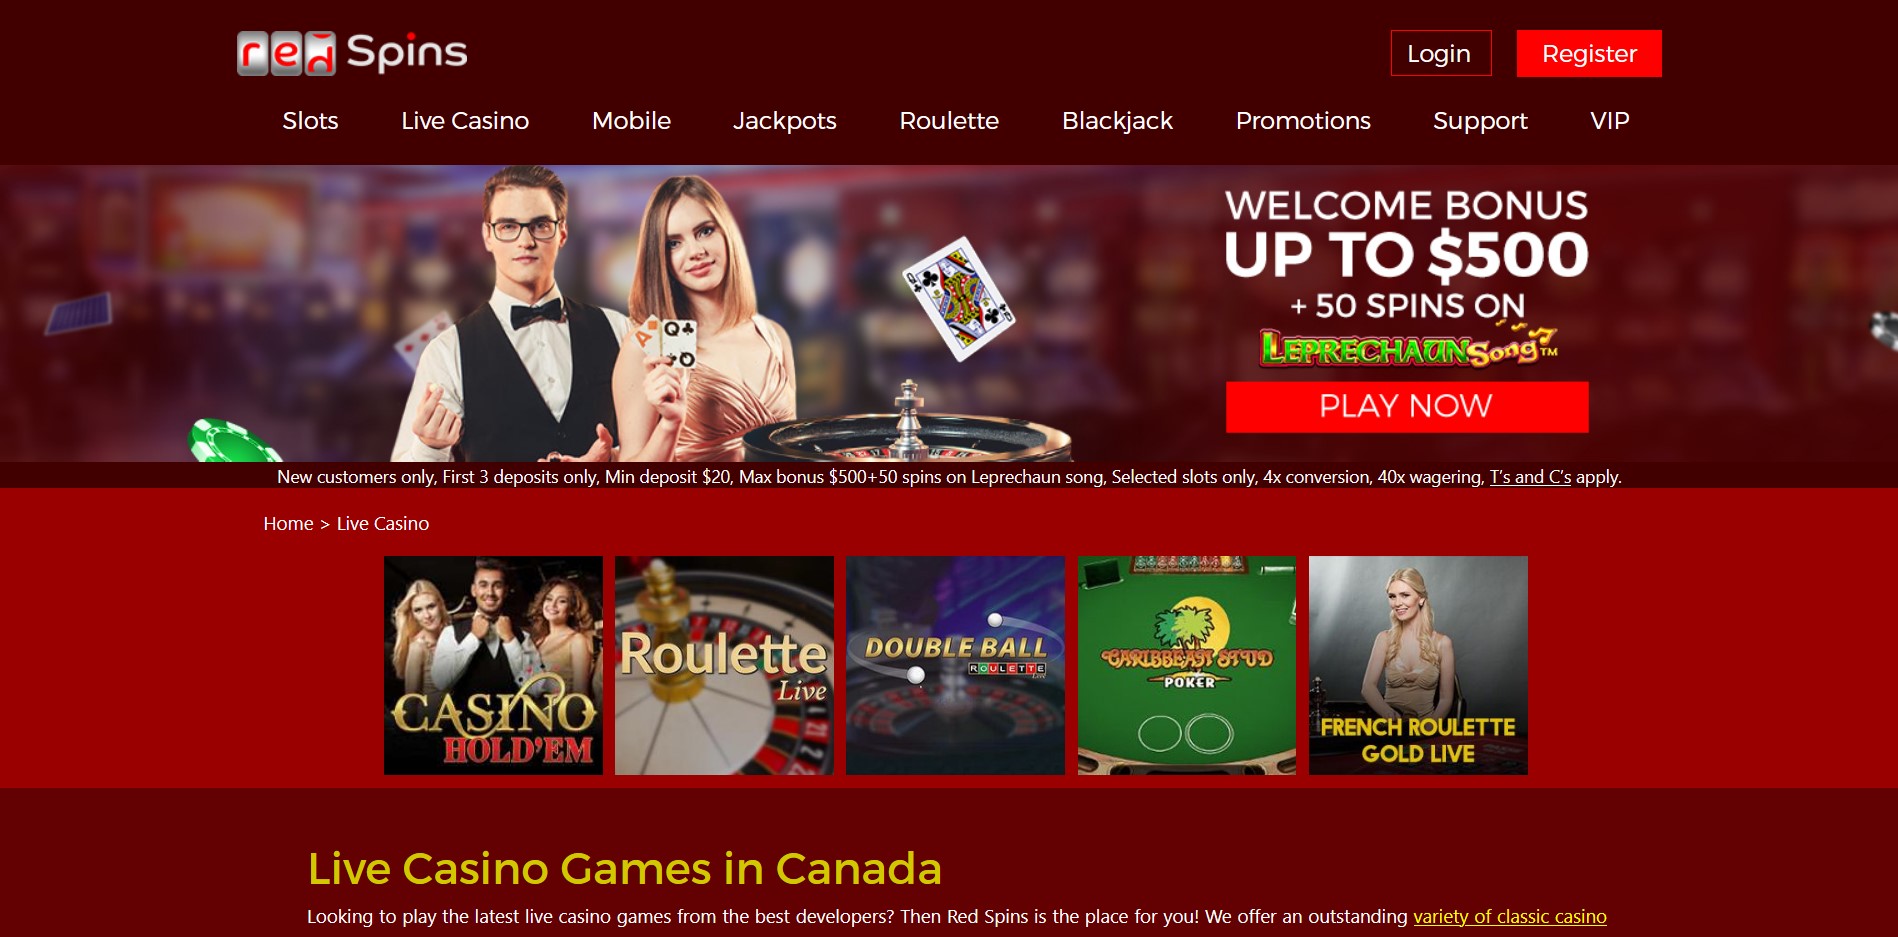 Red Spins Casino Live Dealer Games